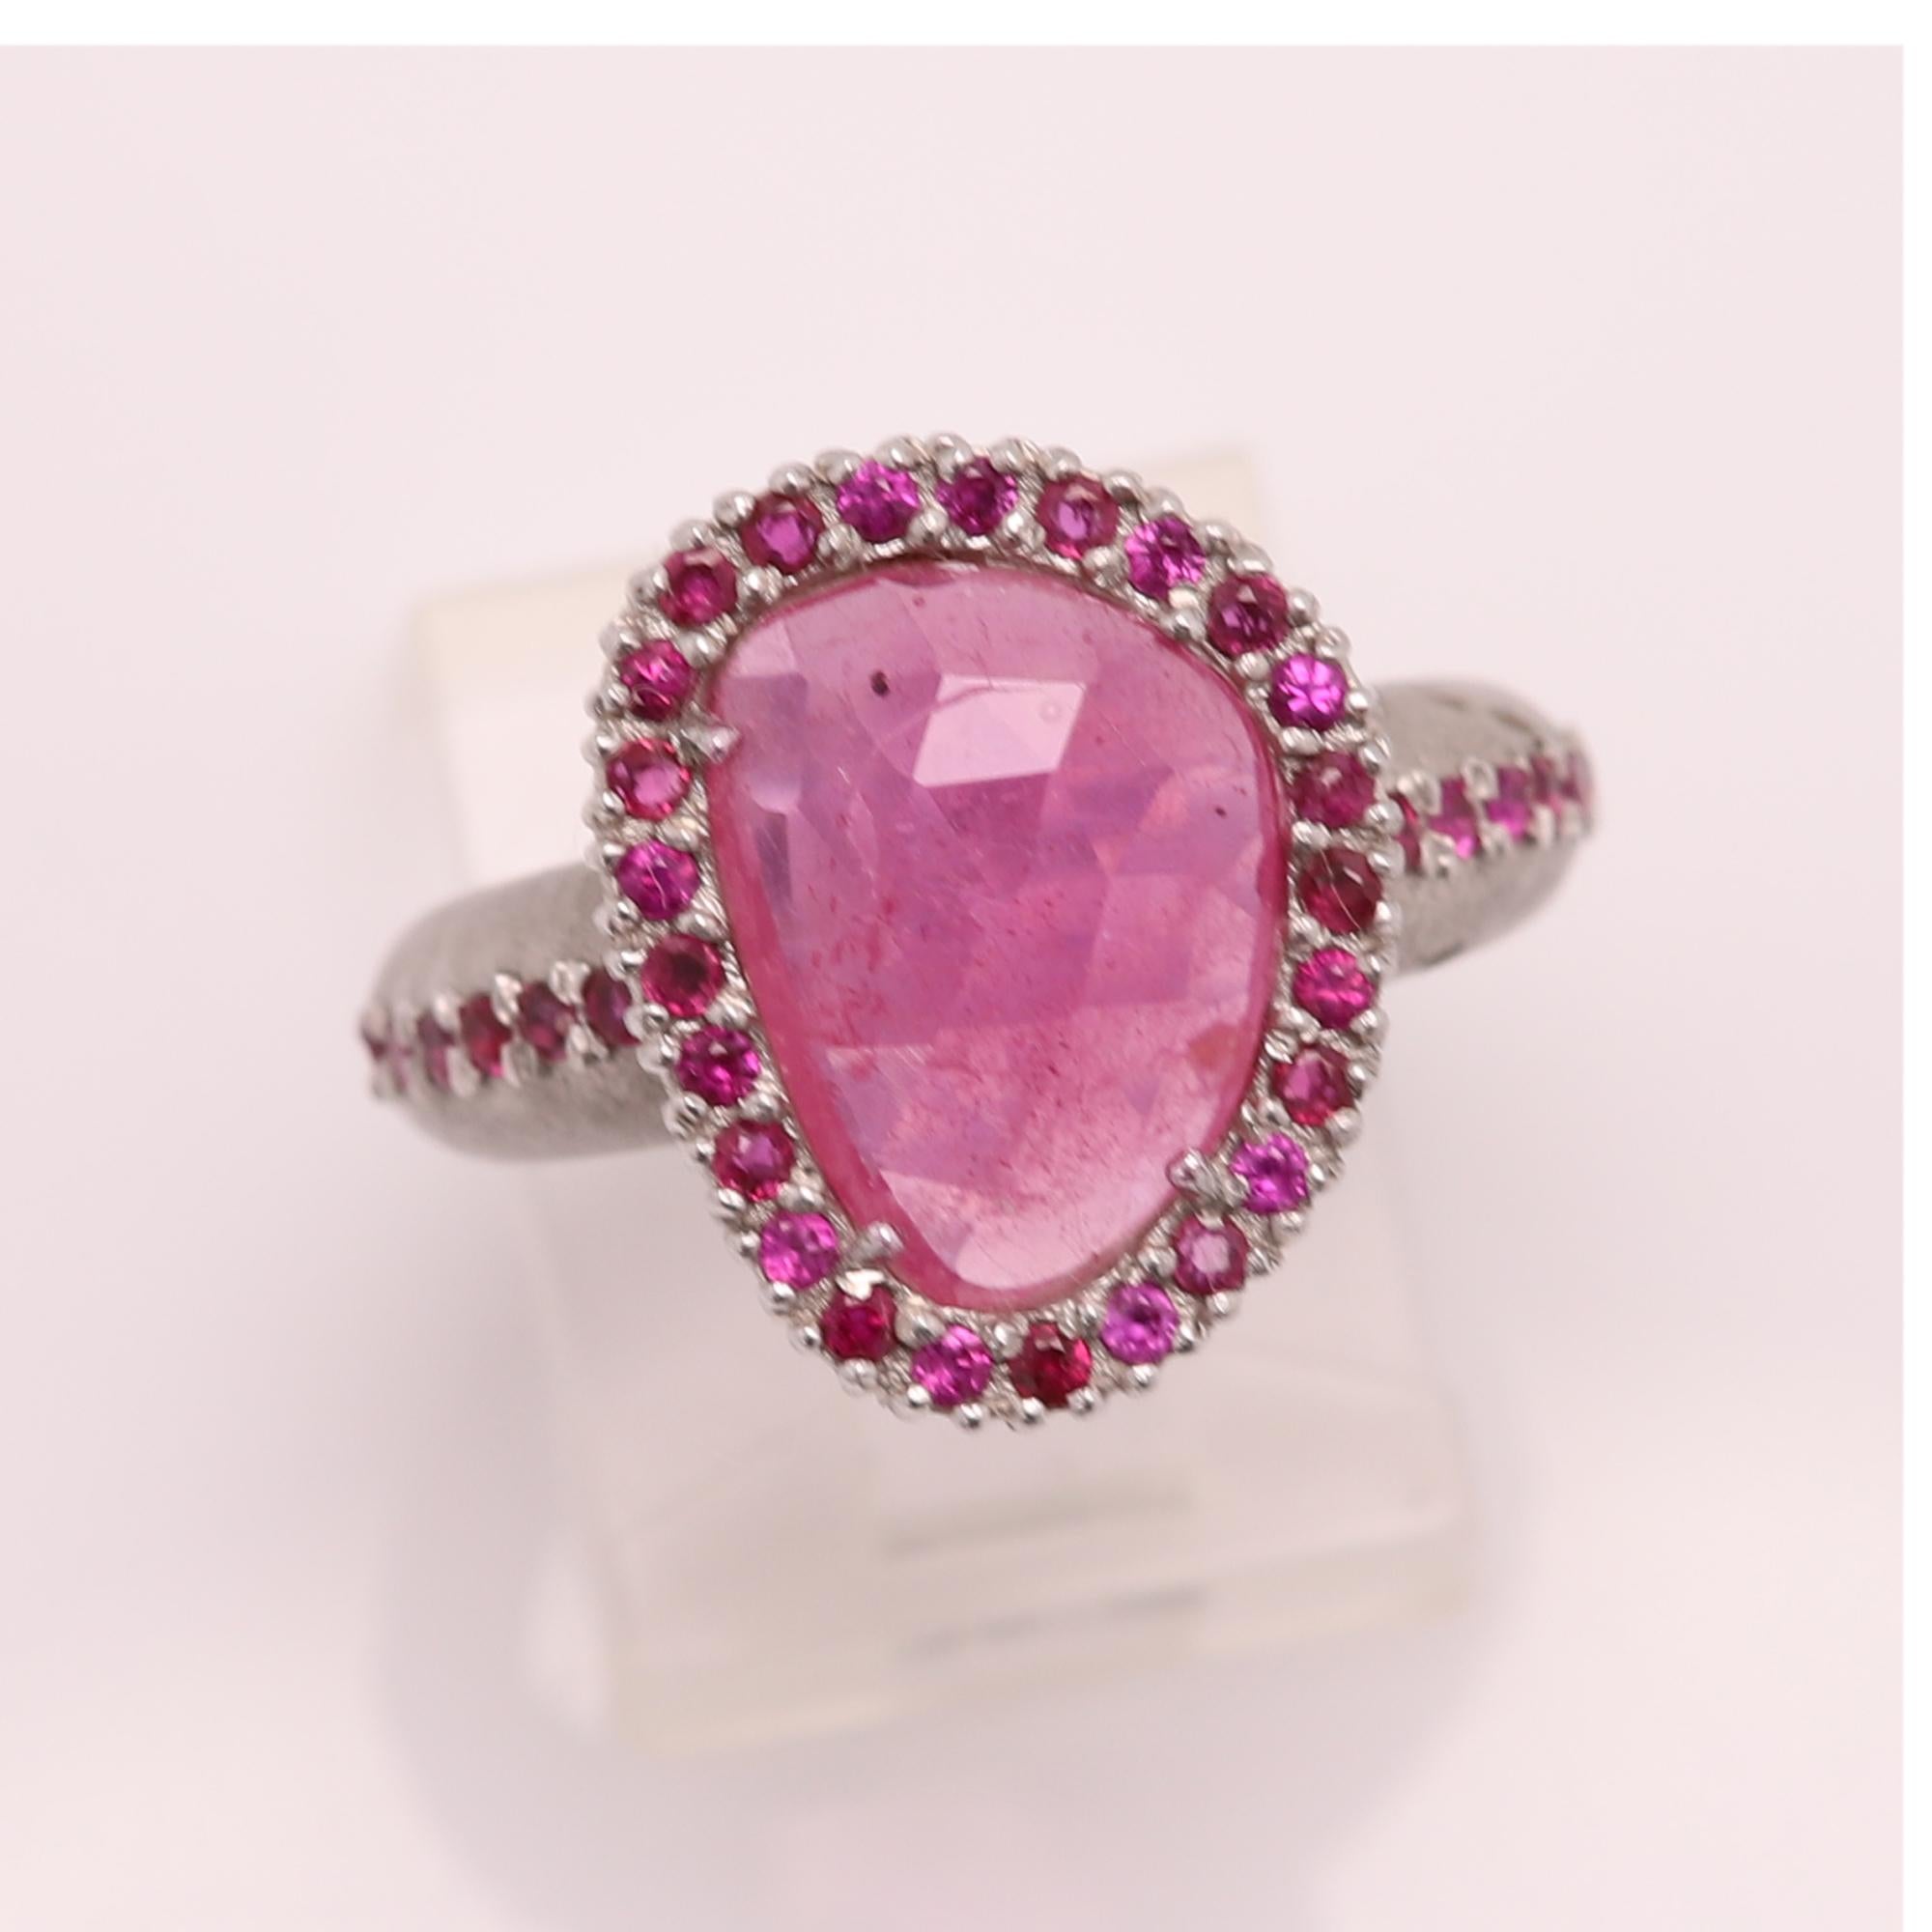 Pink Tourmaline Sliced Gem Ring 14 Karat Gold Vintage Pink Tourmaline Ring For Sale 3